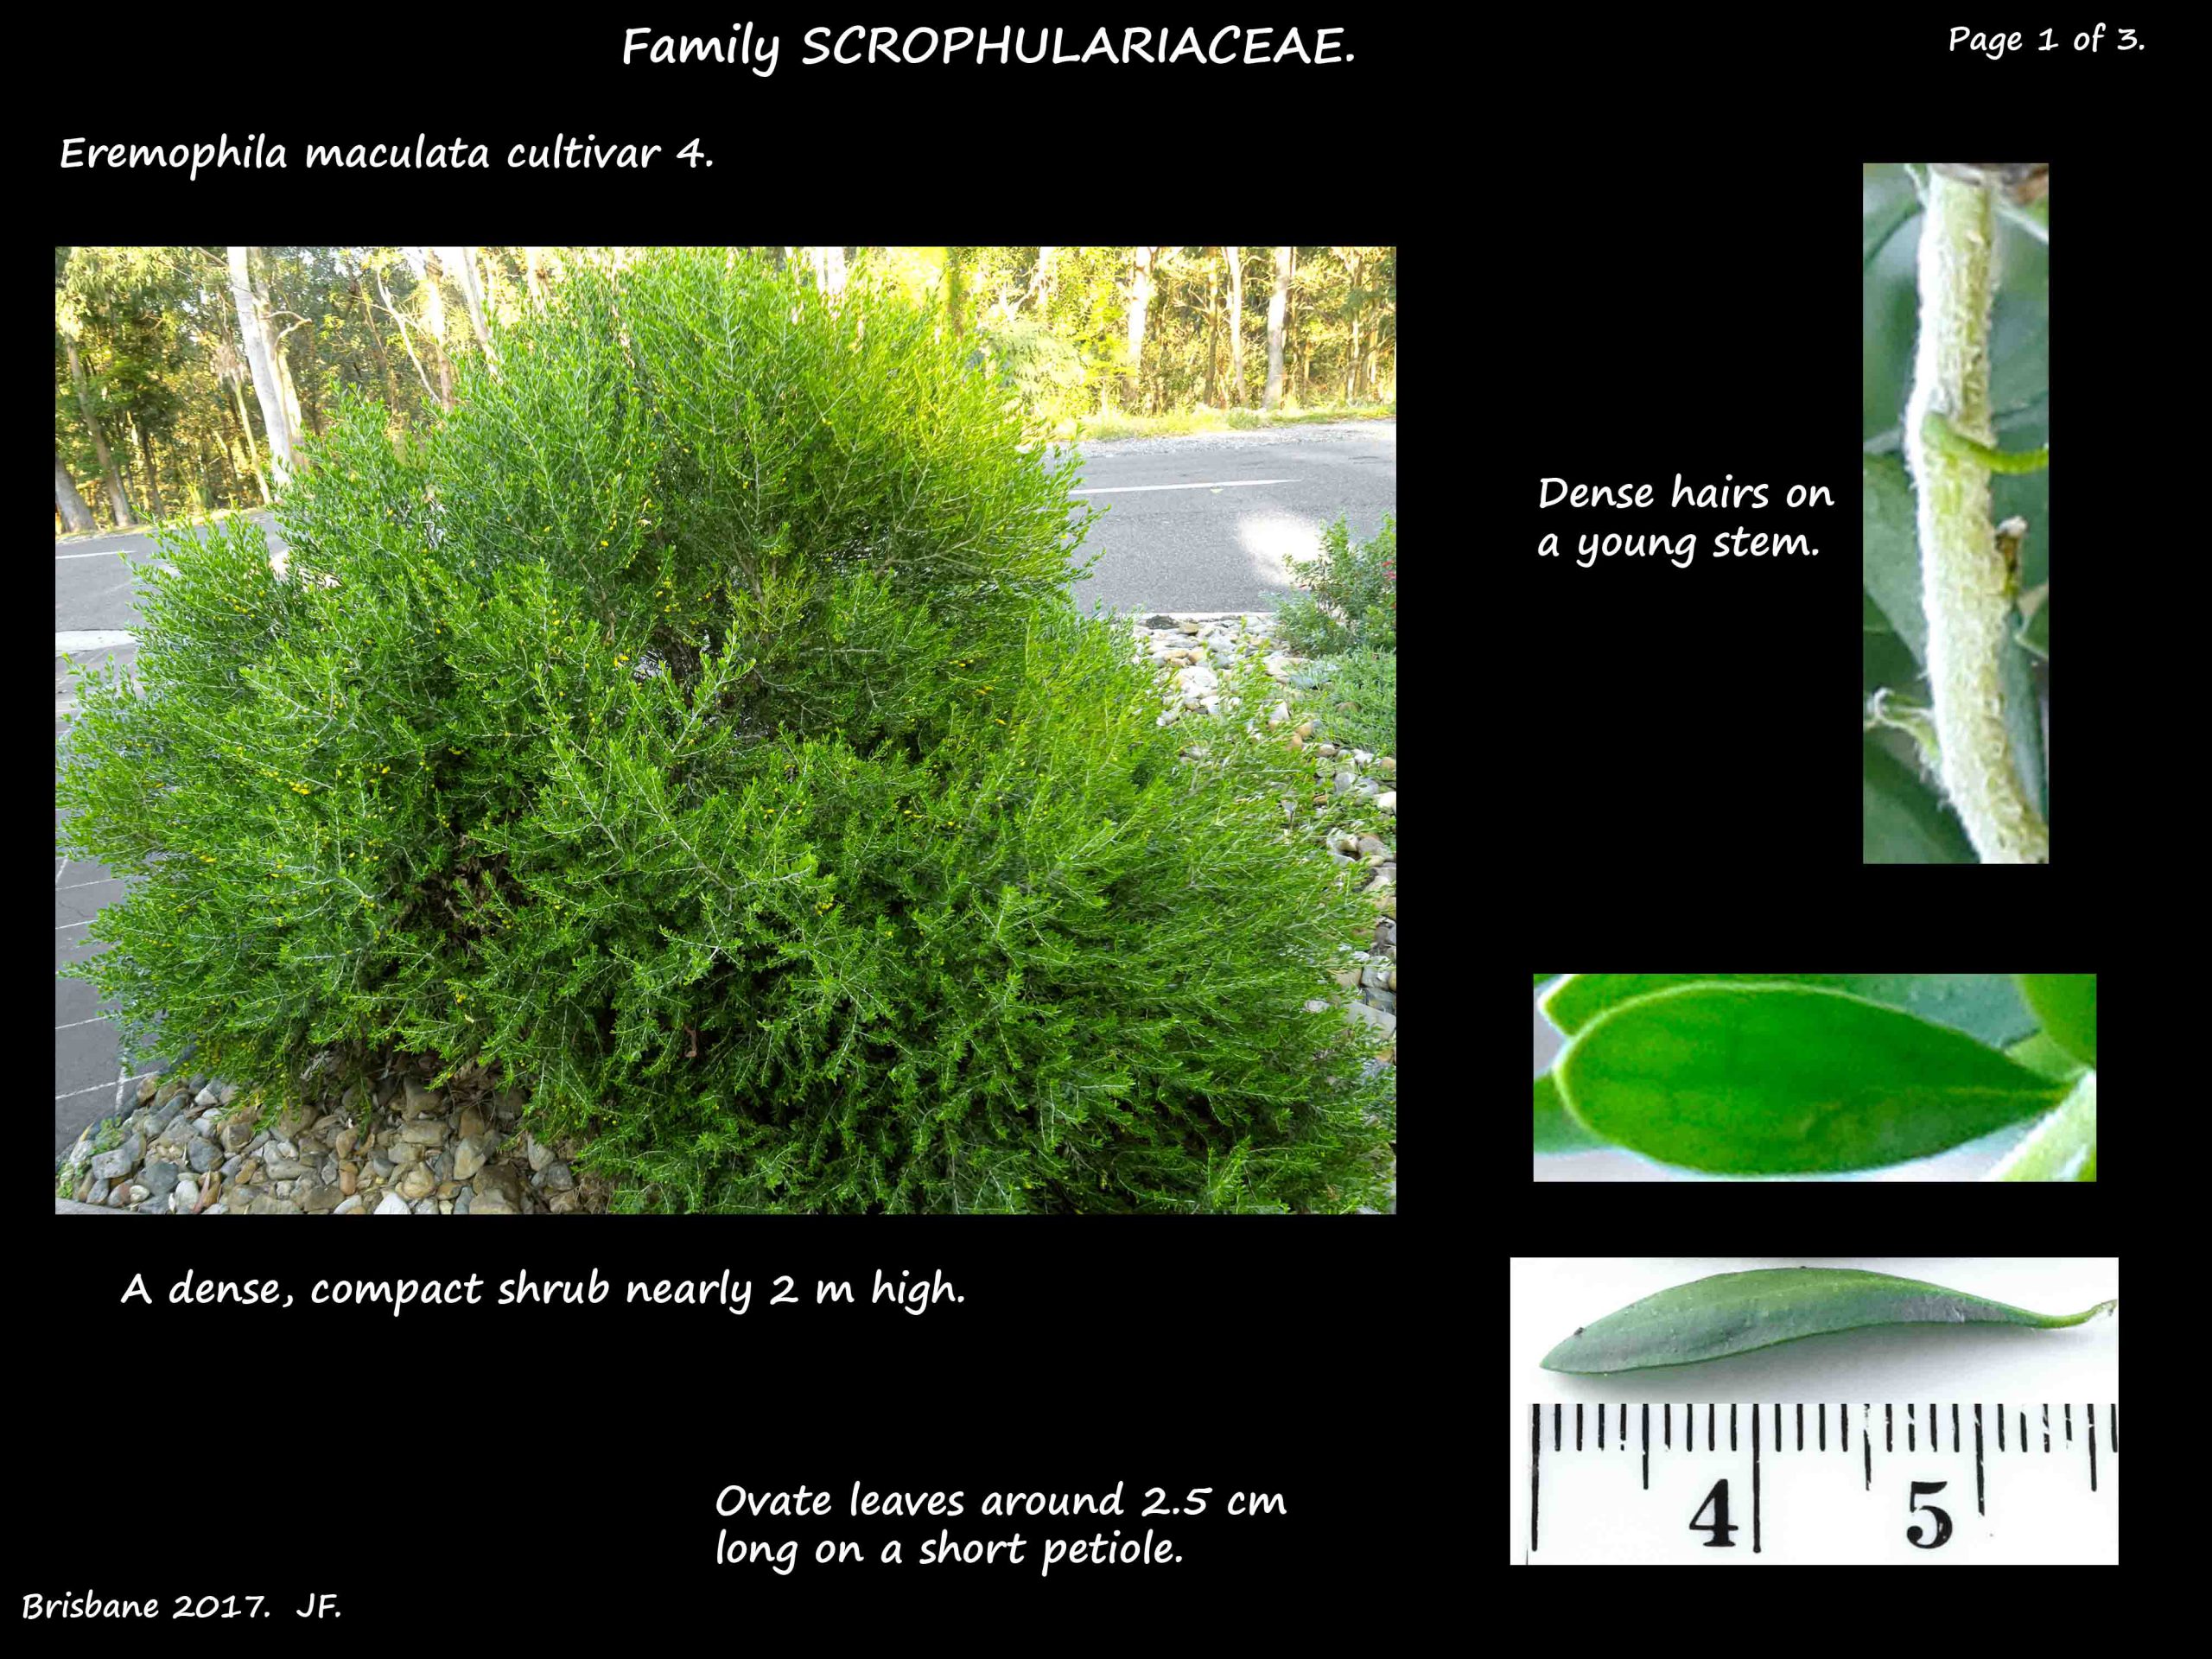 7 Eremophila cultivar shrub & leaves